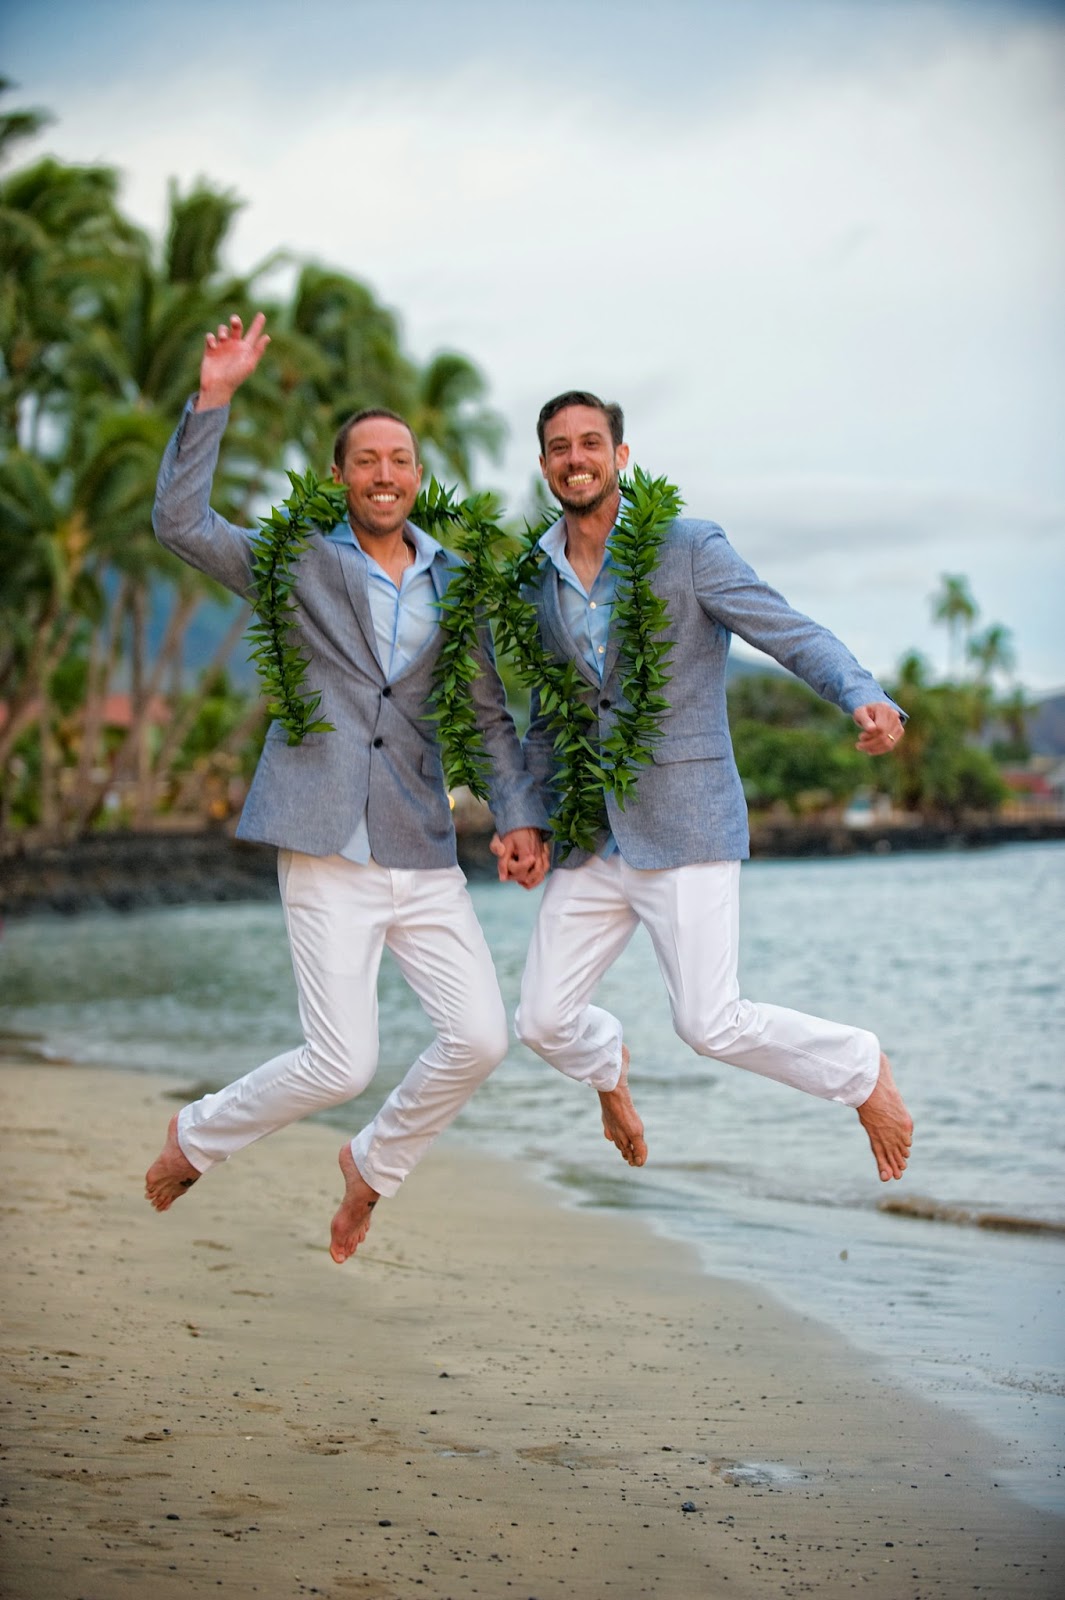 Maui gay weddings, gay weddings maui, maui wedding planners, maui gay wedding planners